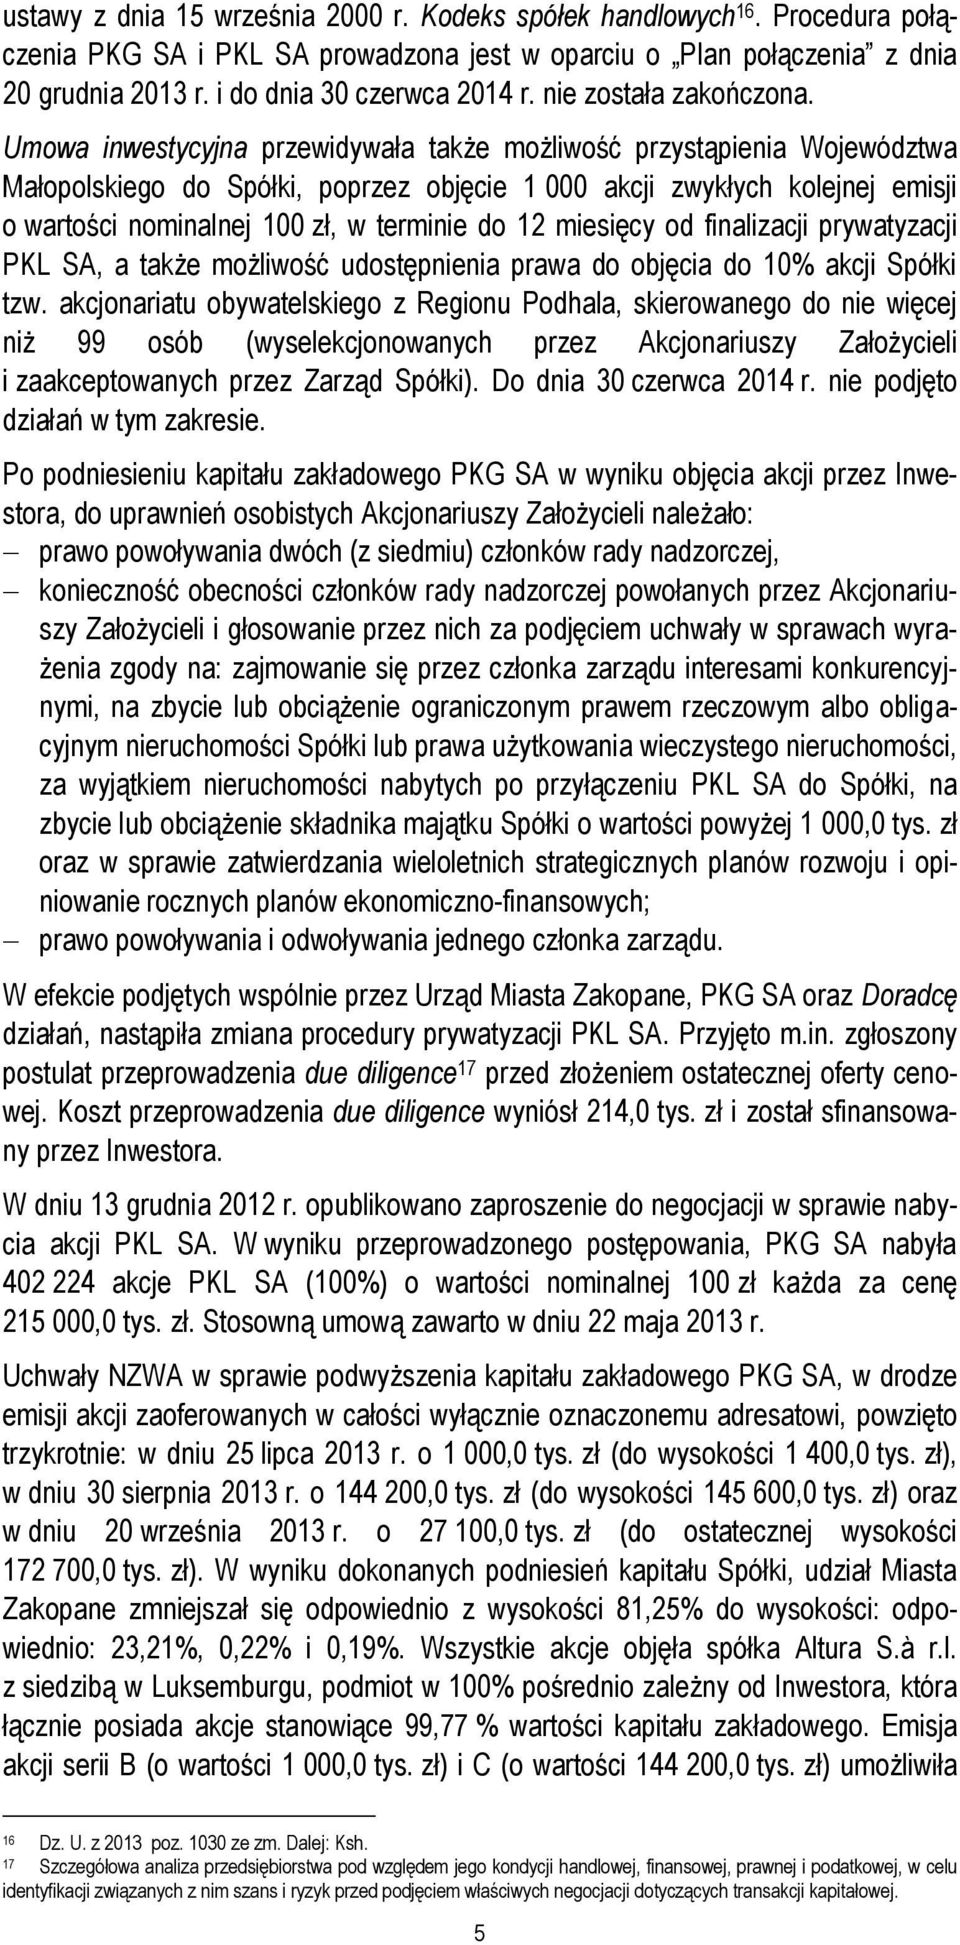 Umowa inwestycyjna przewidywała także możliwość przystąpienia Województwa Małopolskiego do Spółki, poprzez objęcie 1 000 akcji zwykłych kolejnej emisji o wartości nominalnej 100 zł, w terminie do 12